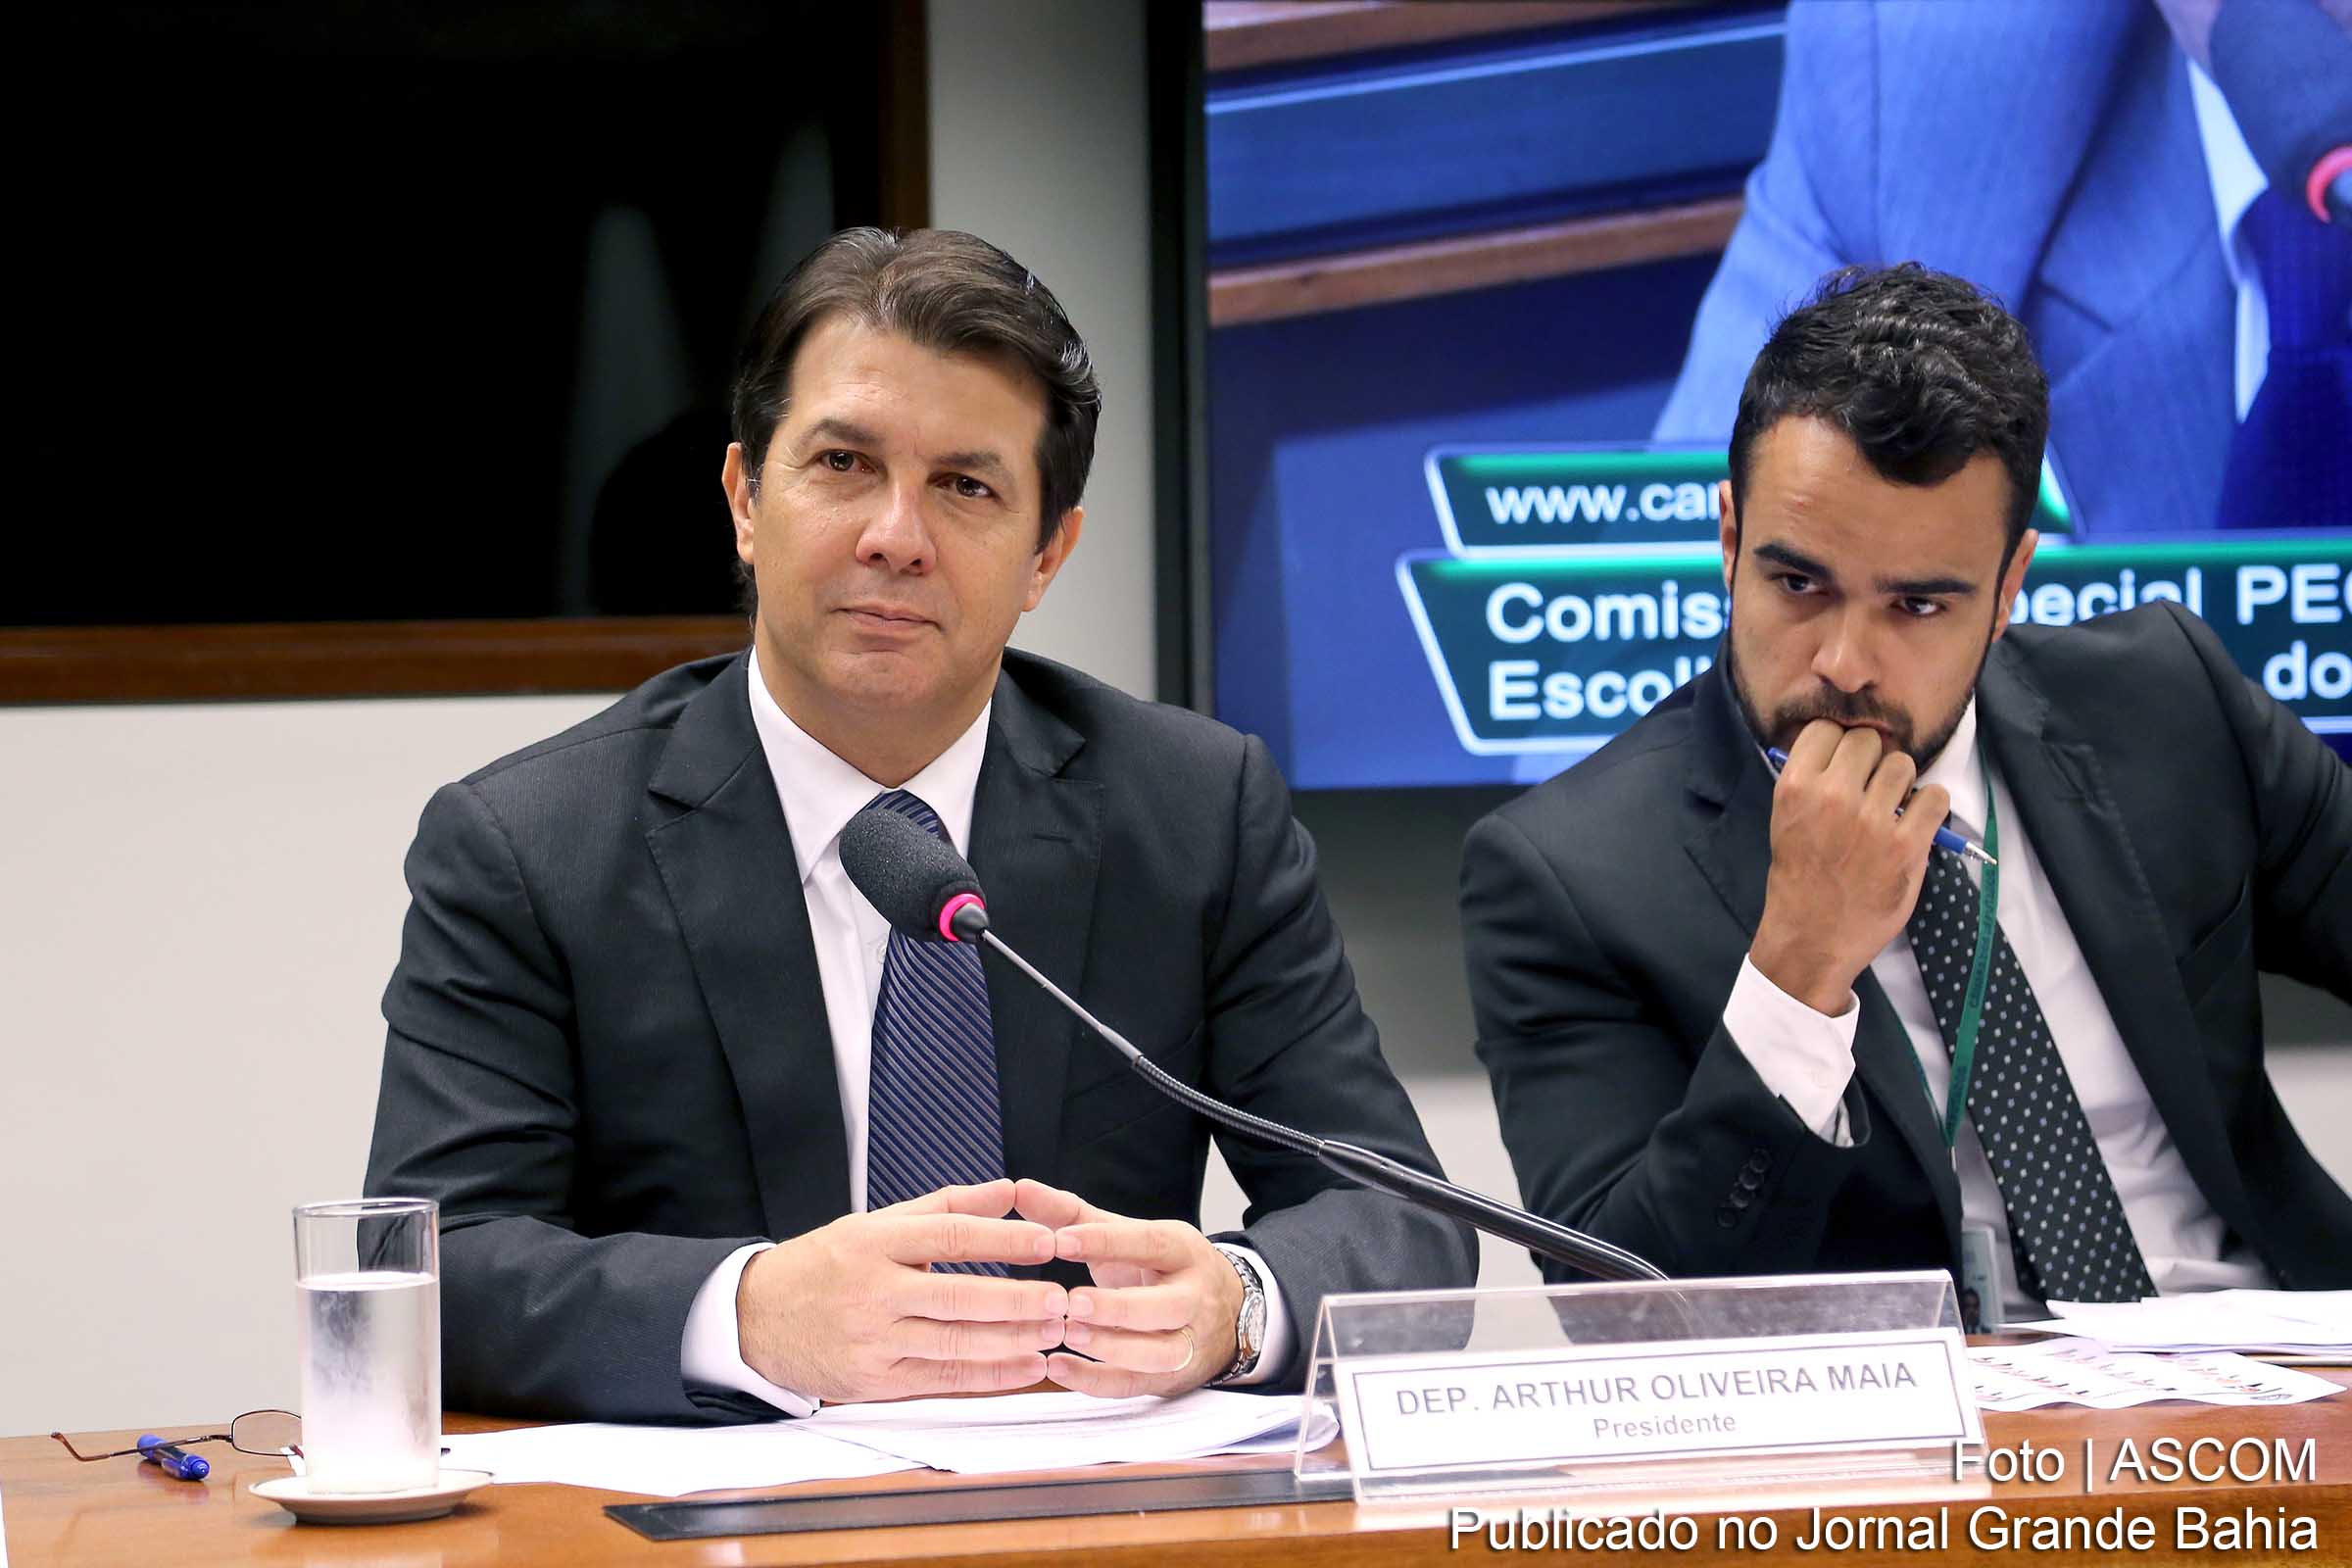 Deputado Arthur Oliveira Maia: “Hoje não há prazo para análise. É necessário estabelecer um prazo razoável para o julgamento das contas, de modo a dar cabo ao processo e concretizar o mandamento constitucional de análise de contas.".